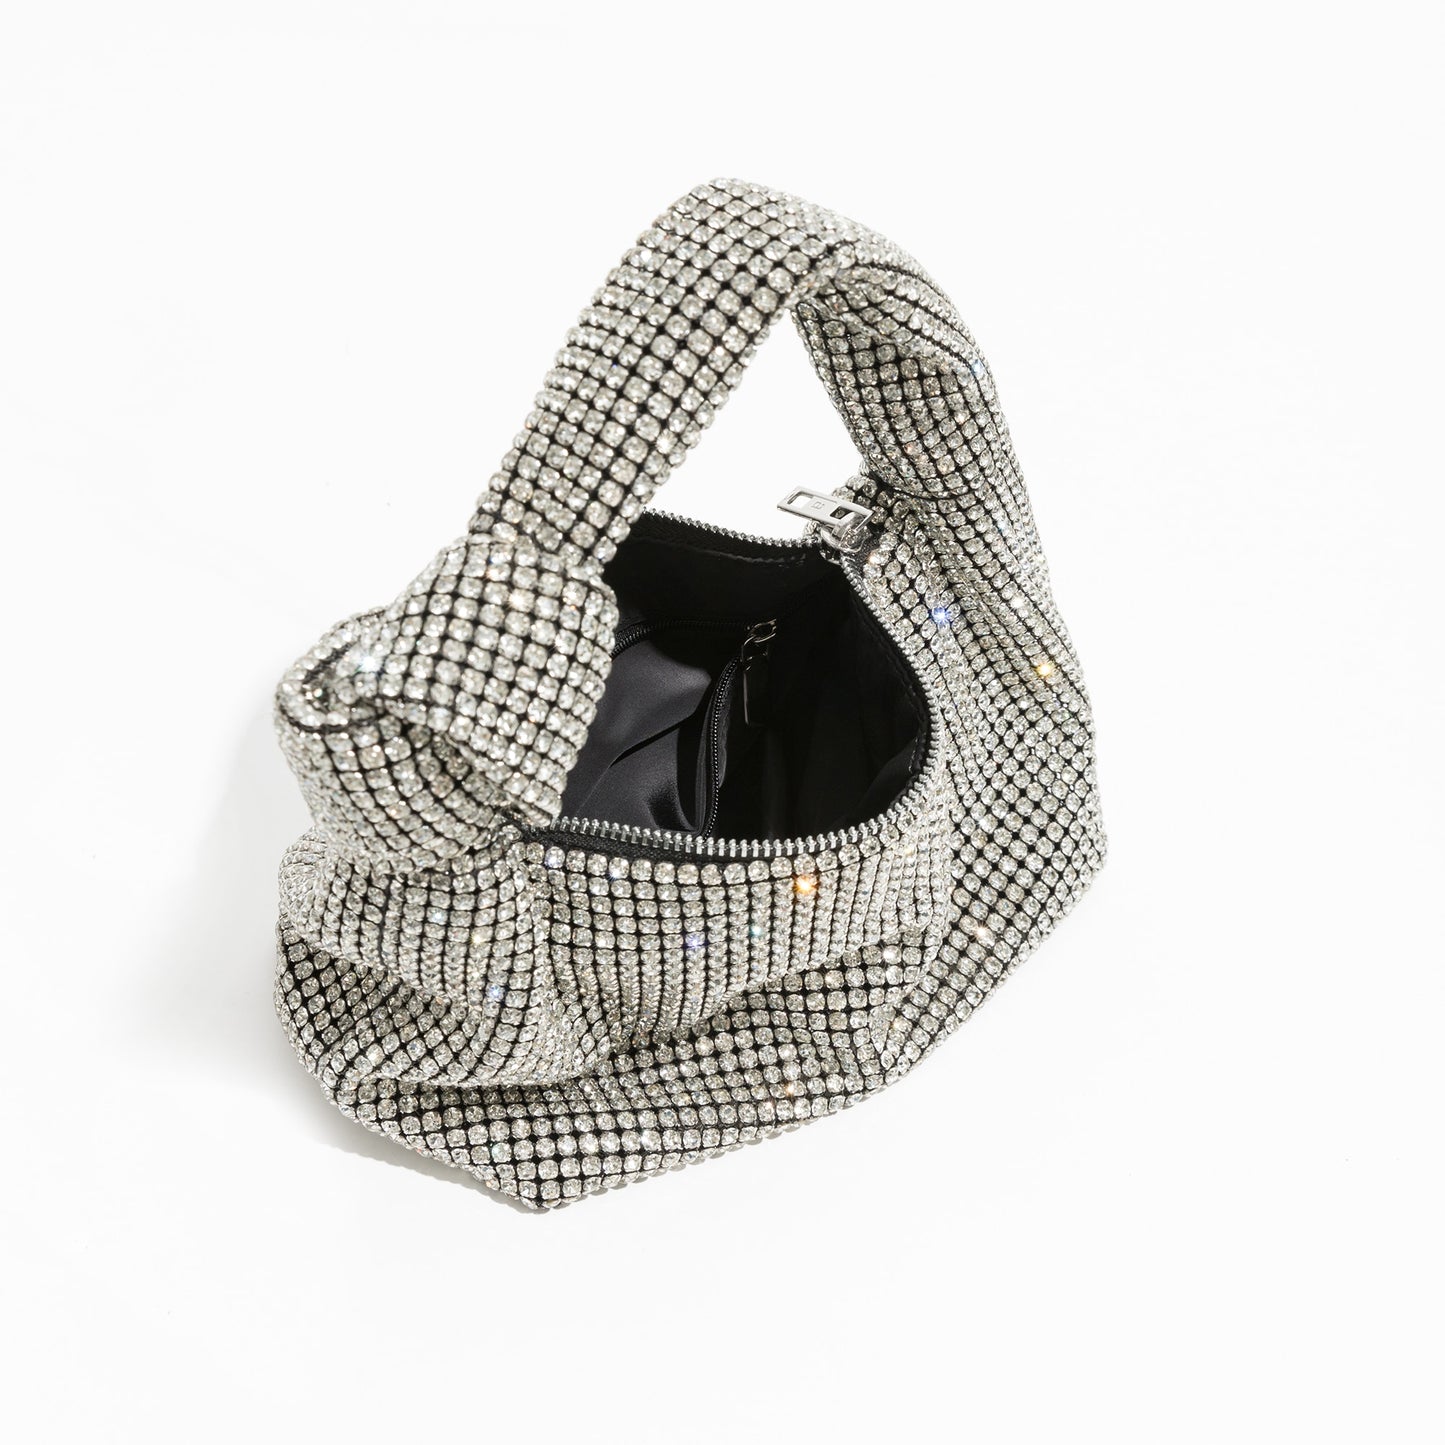 Dazzle knot bag